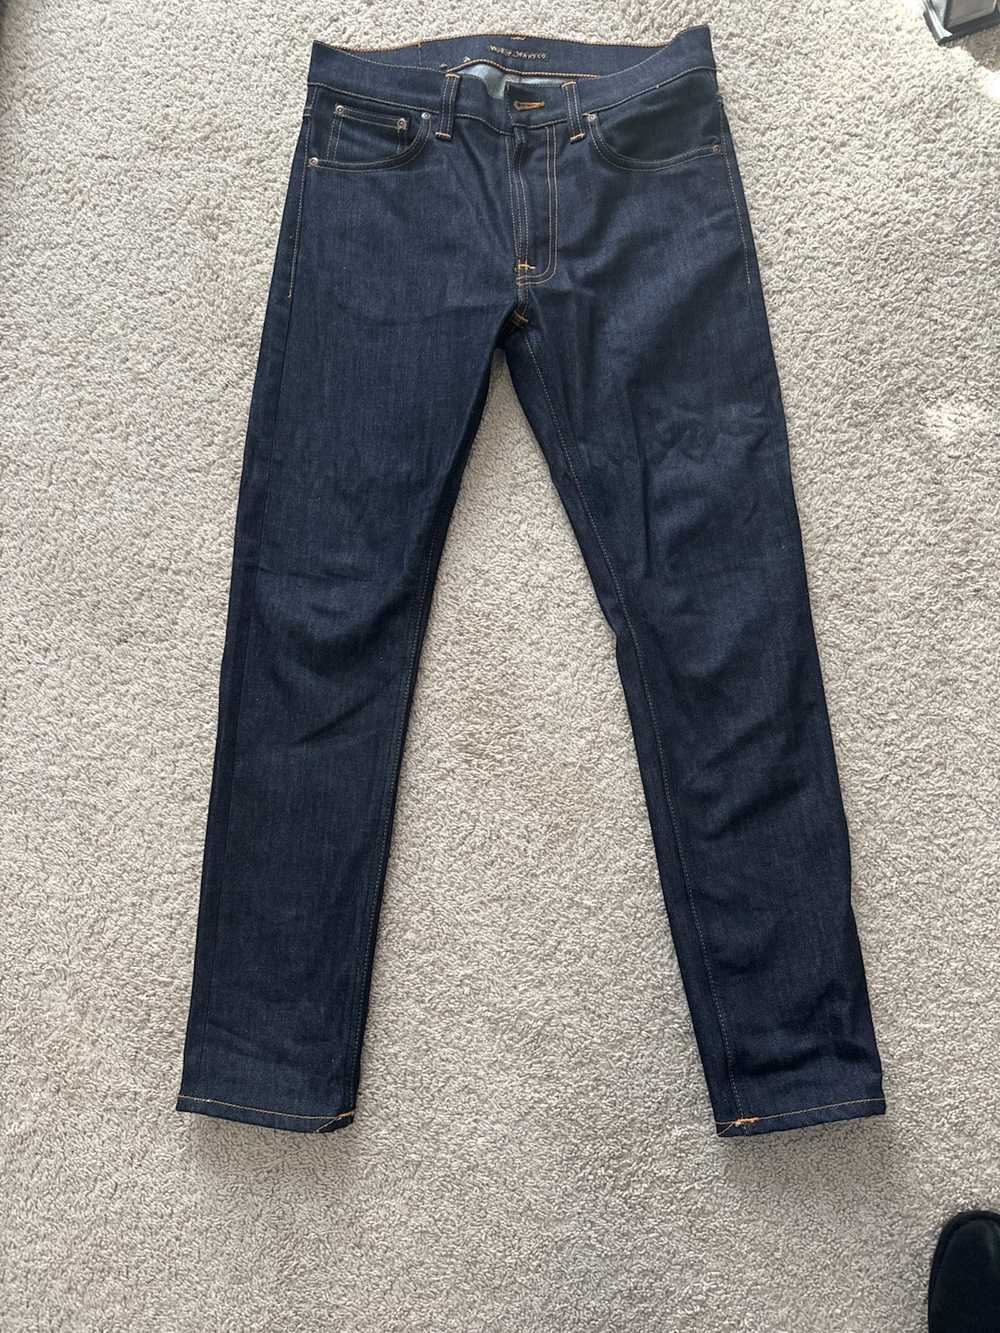 Nudie Jeans Nudie Jeans Lean Dean Dry 16 sz 30 Or… - image 6